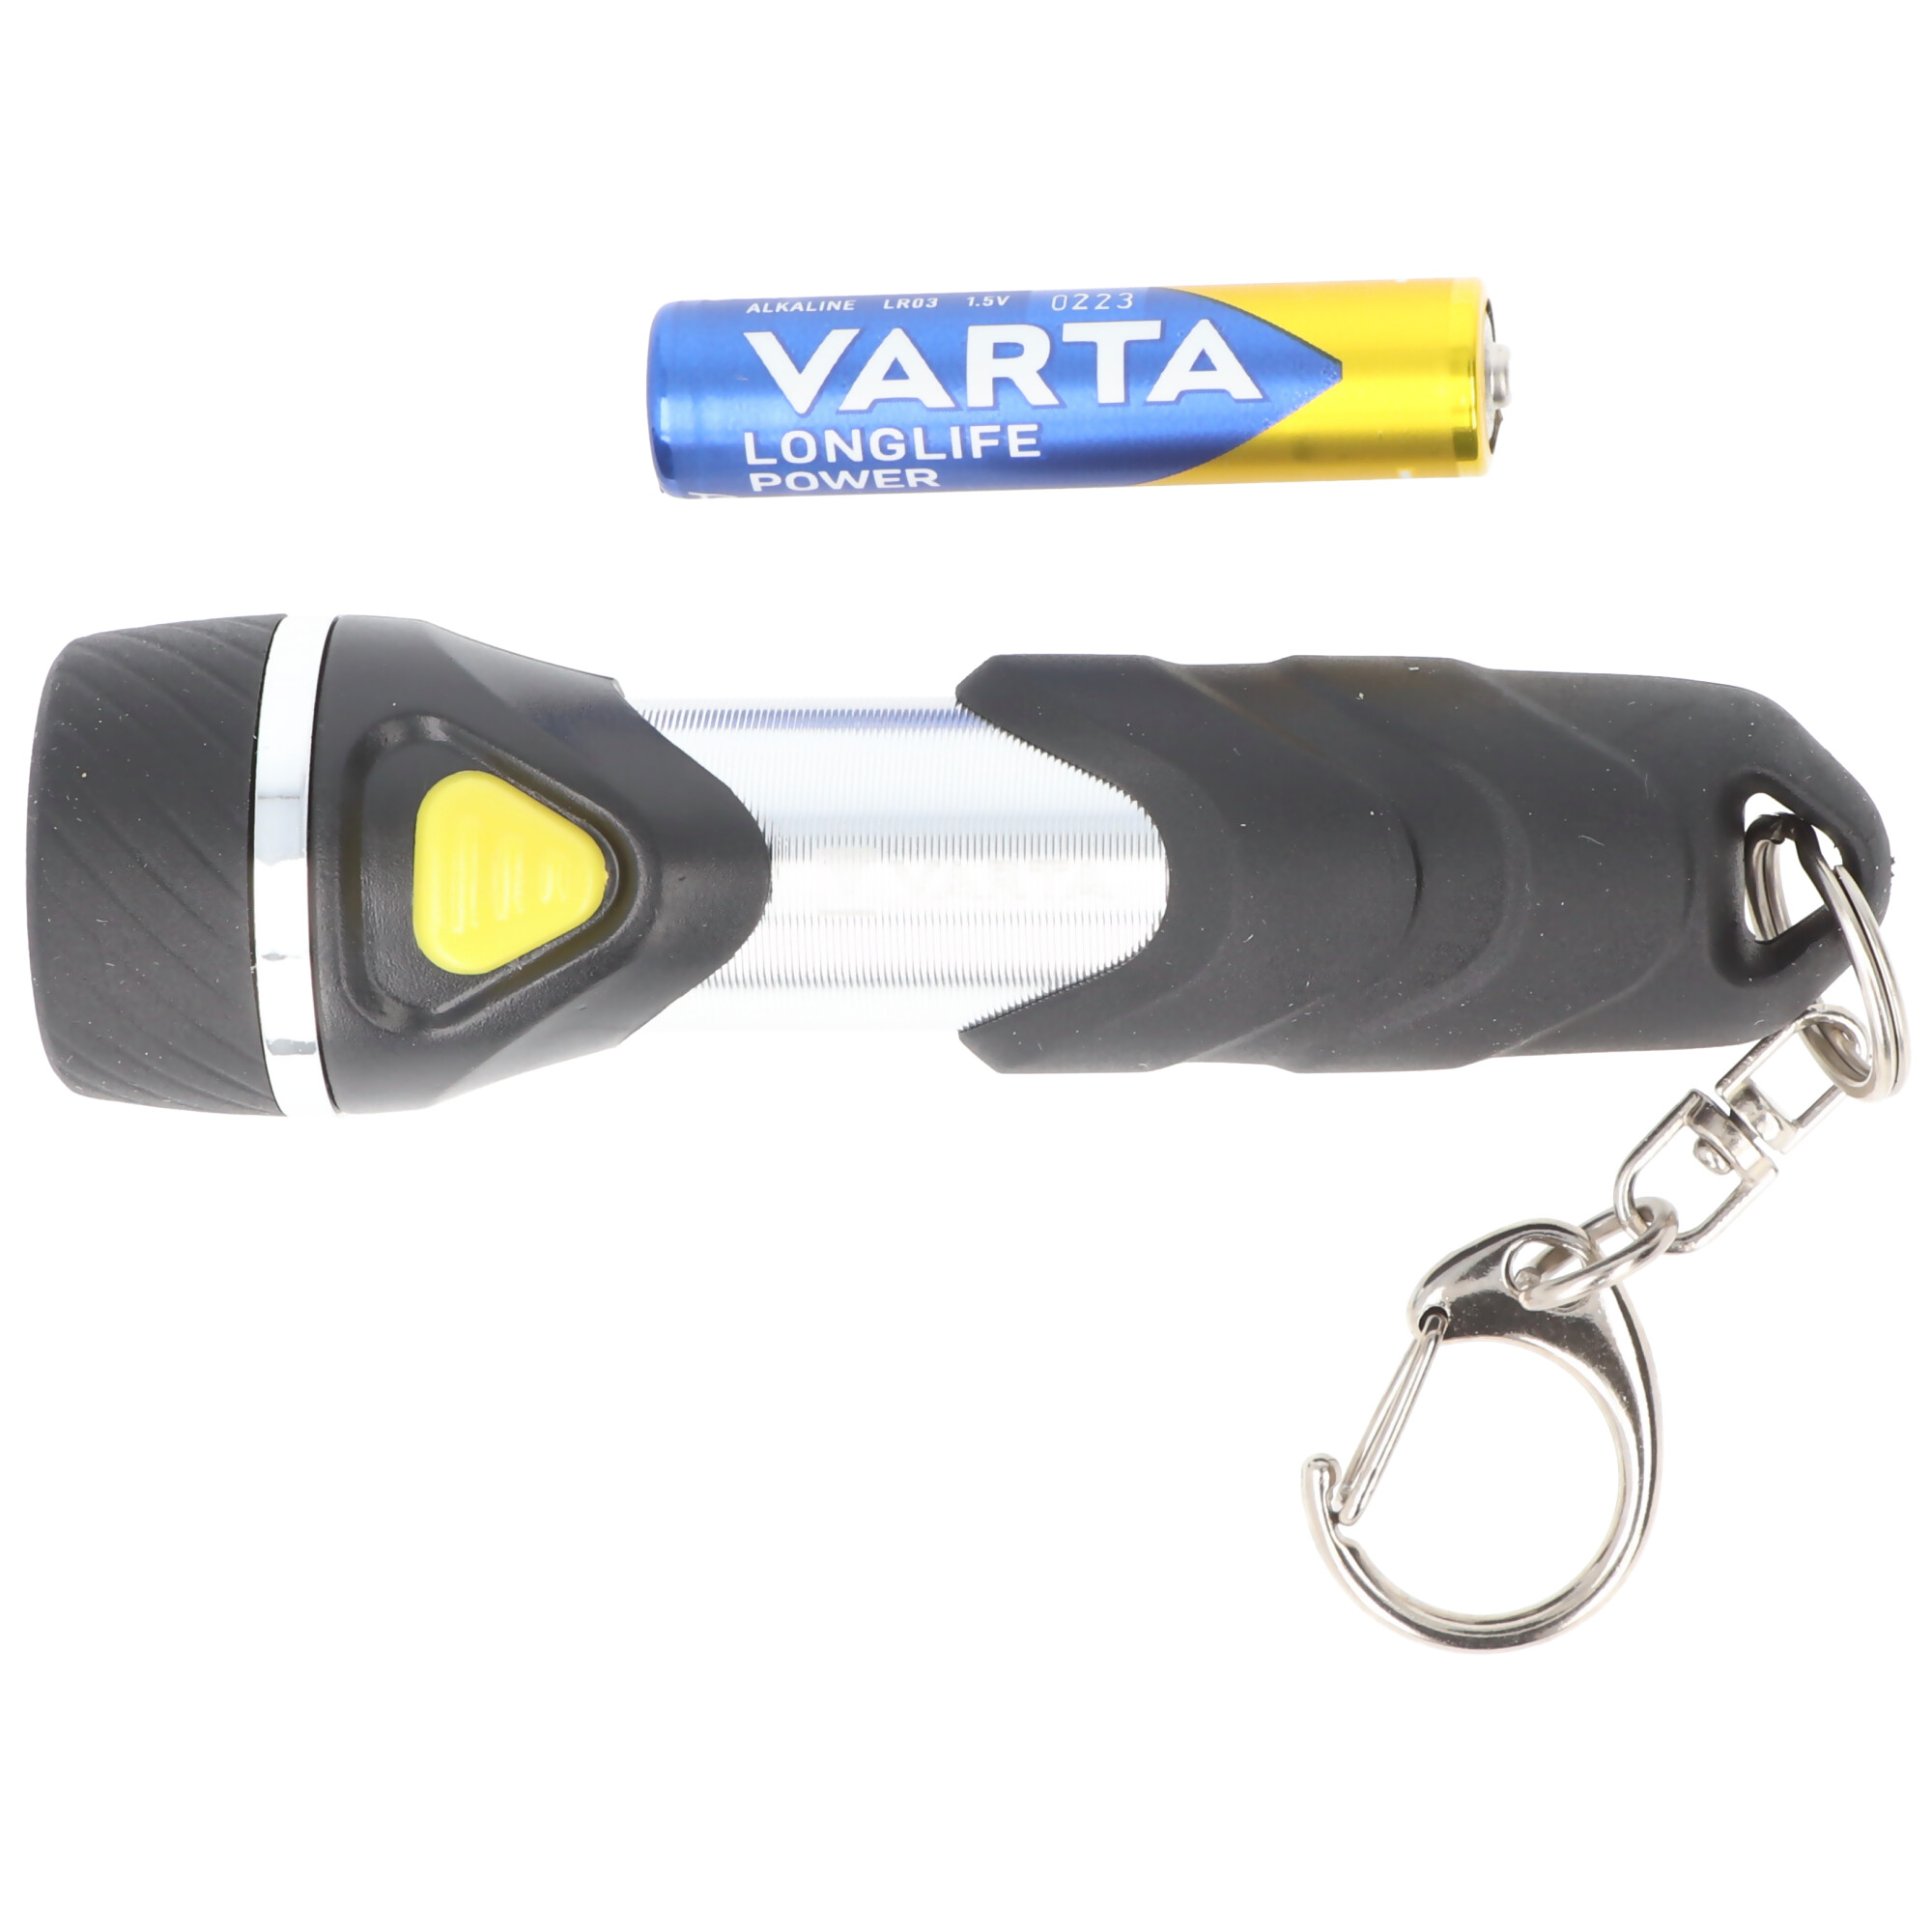 Varta LED Taschenlampe Day Light, Key Chain 12lm, inkl. 1x Batterie  Alkaline AAA, Retail Blister | LED-Taschenlampen | LEDs,Taschenlampen,  Lichttechnik | Akkushop